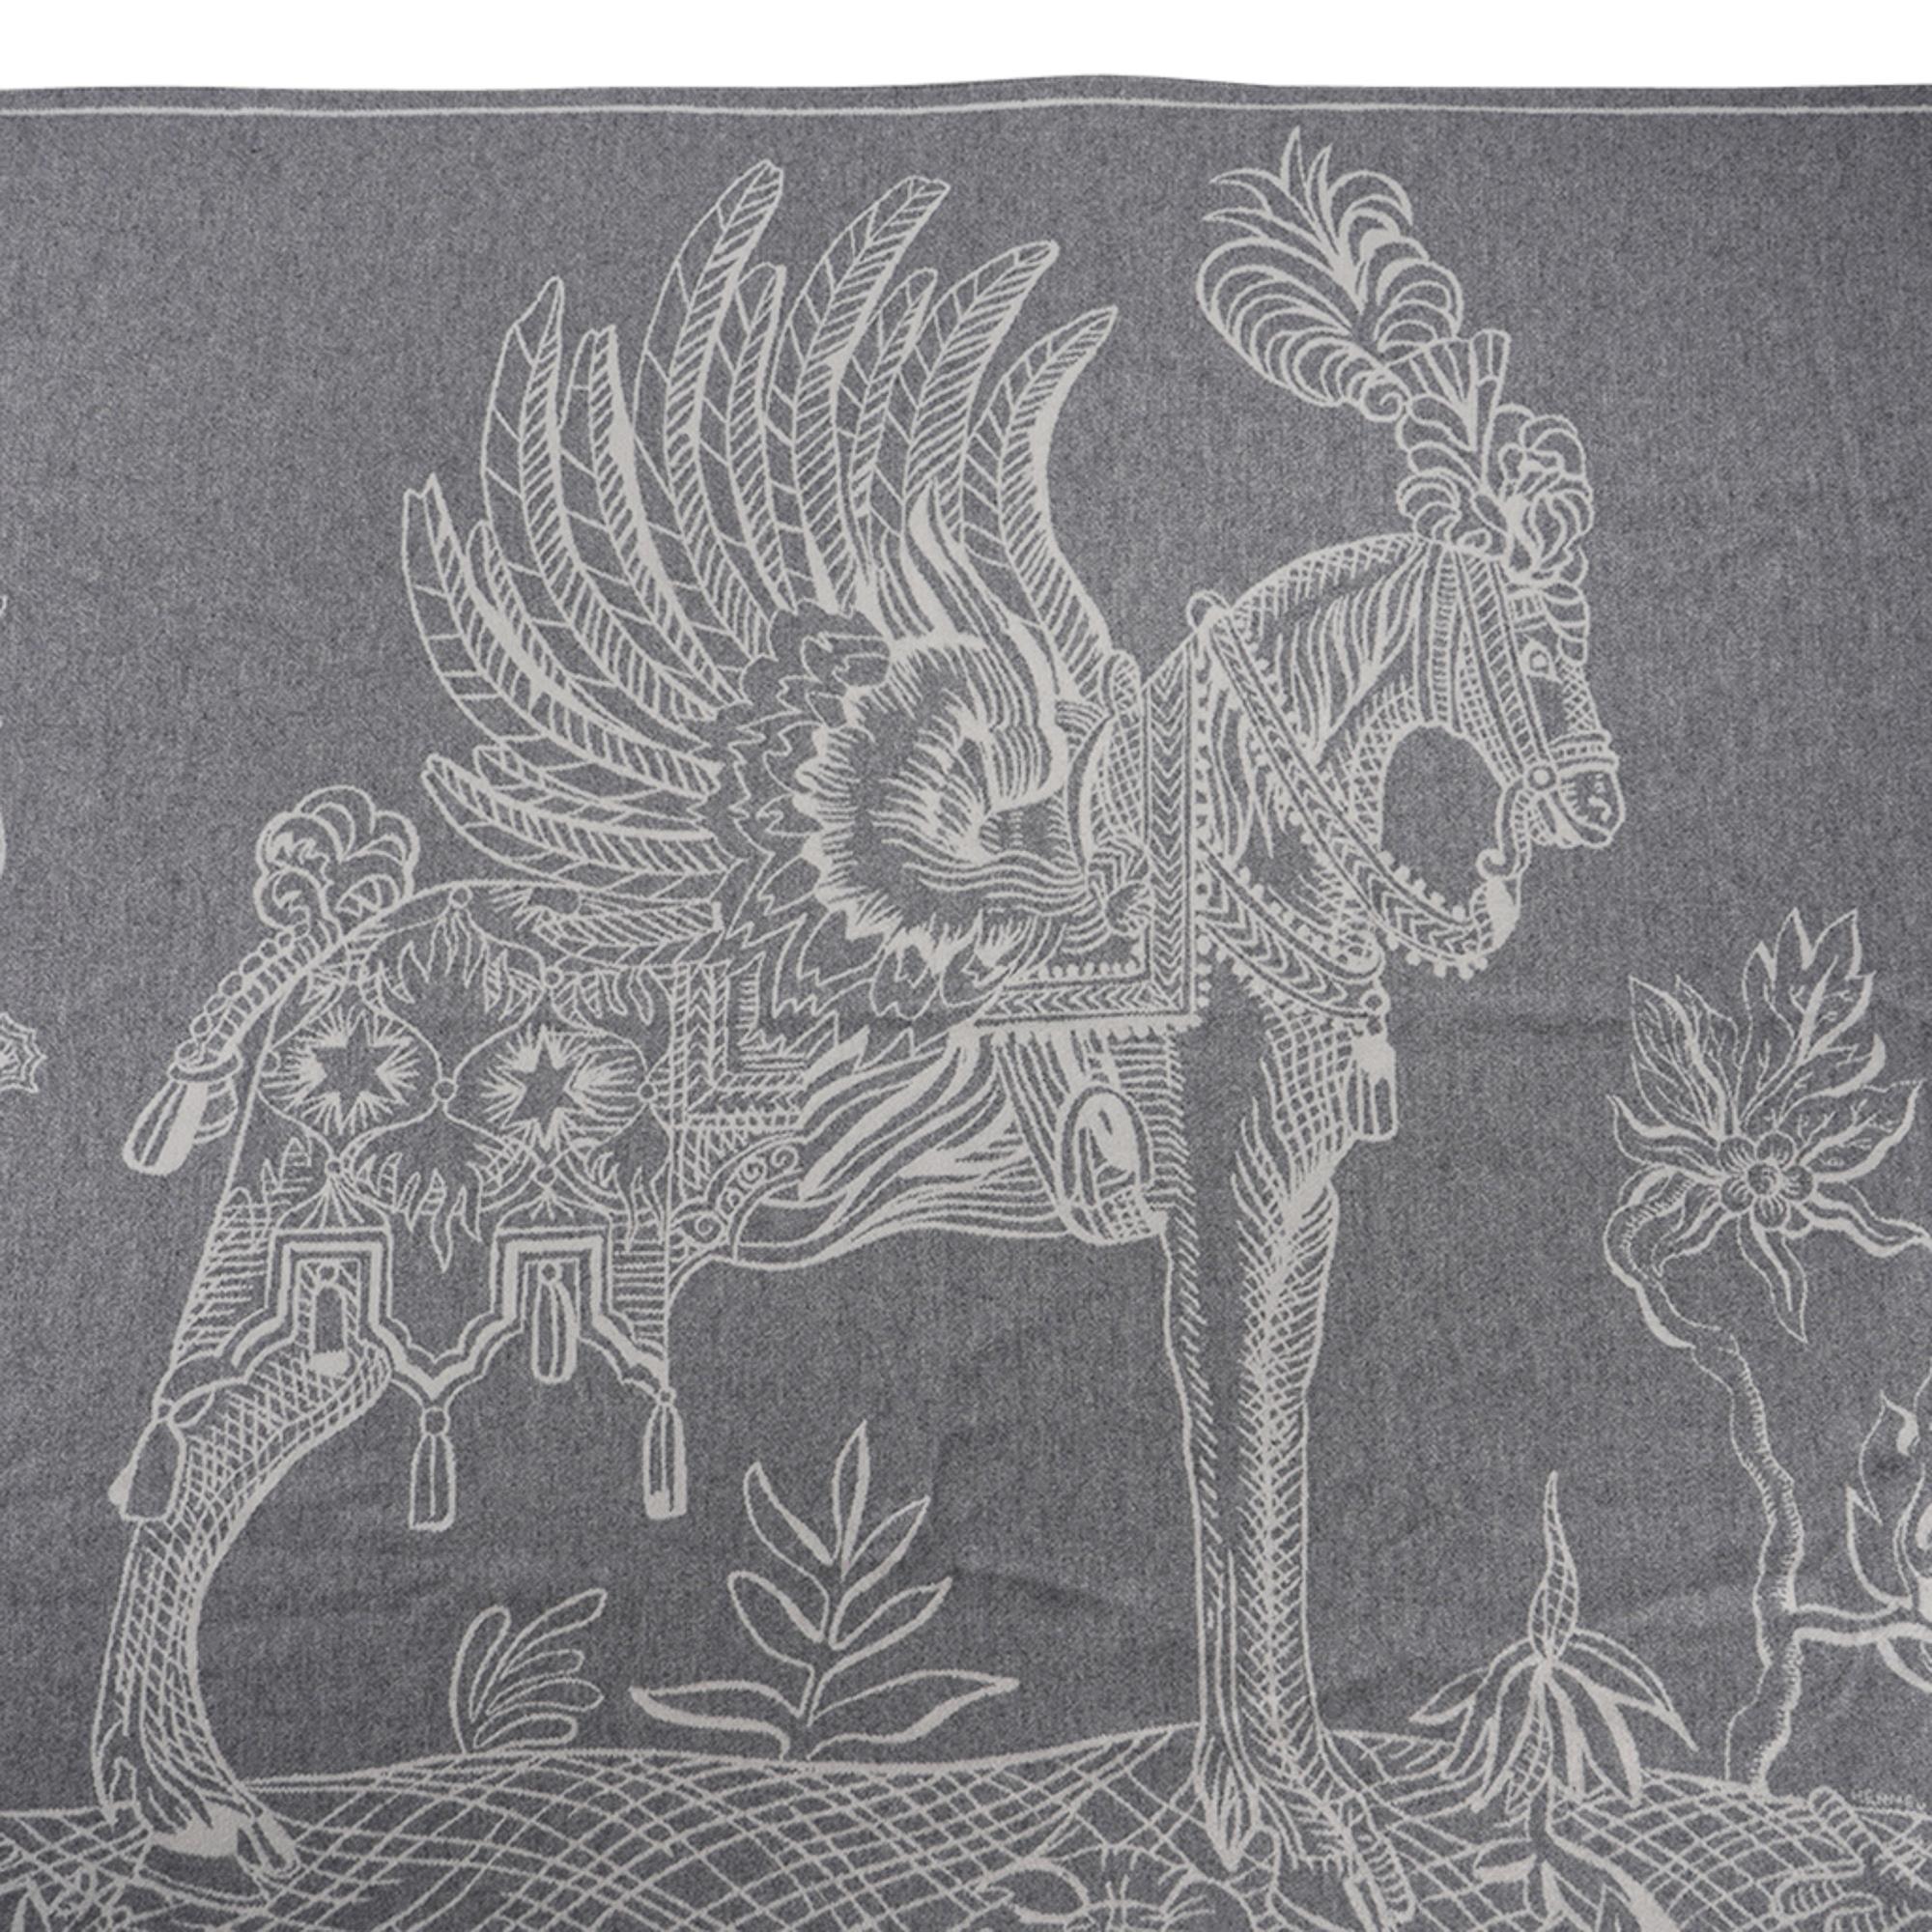 Mightychic bietet eine garantiert authentische Hermes Della Cavalleria Favolosa-Decke in den Farben Gris und Ecru an.
Das Jacquardgewebe aus 72% Kaschmir und 28% Wolle ist mit Fransen eingefasst.
Diese außergewöhnliche reiterliche Komposition ist